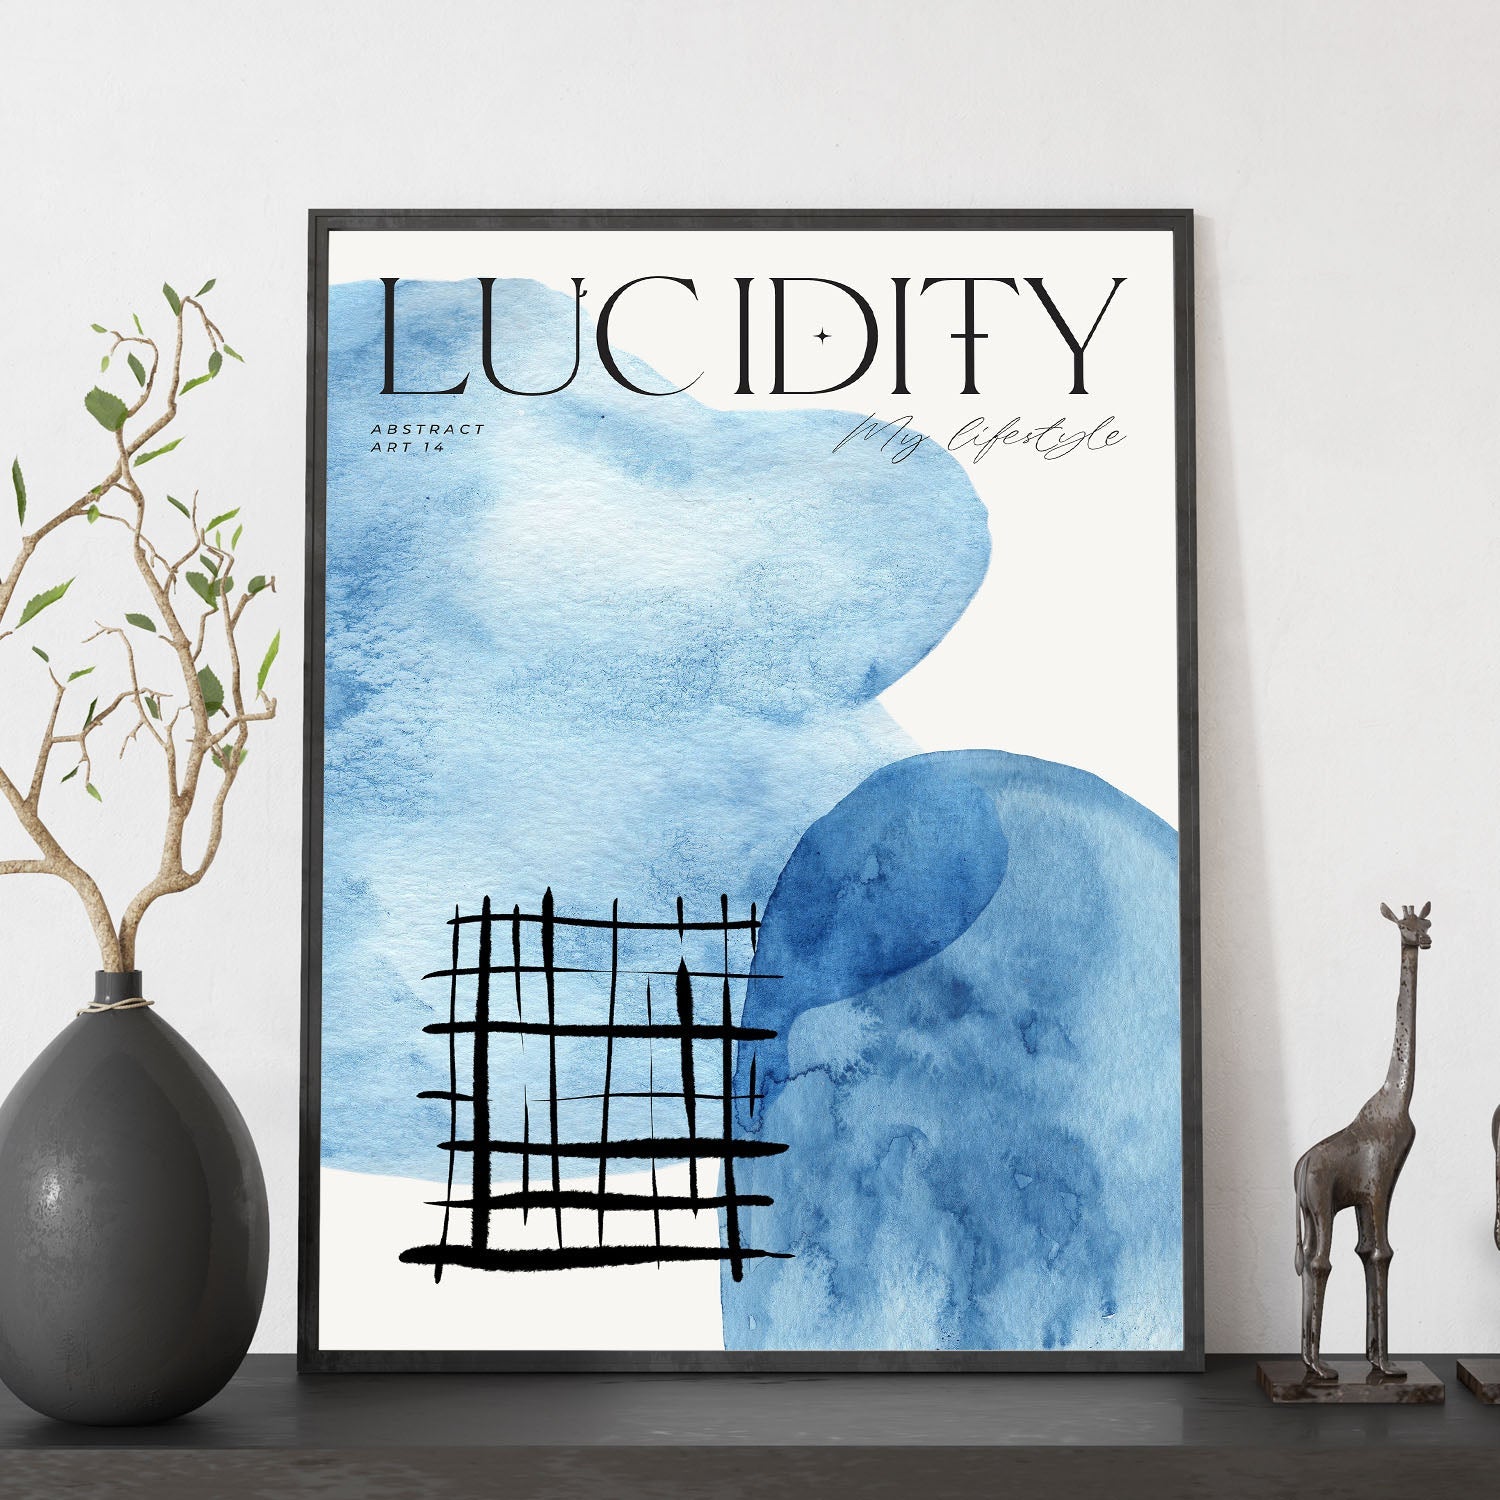 Lucidity-Artwork-Nacnic-Nacnic Estudio SL